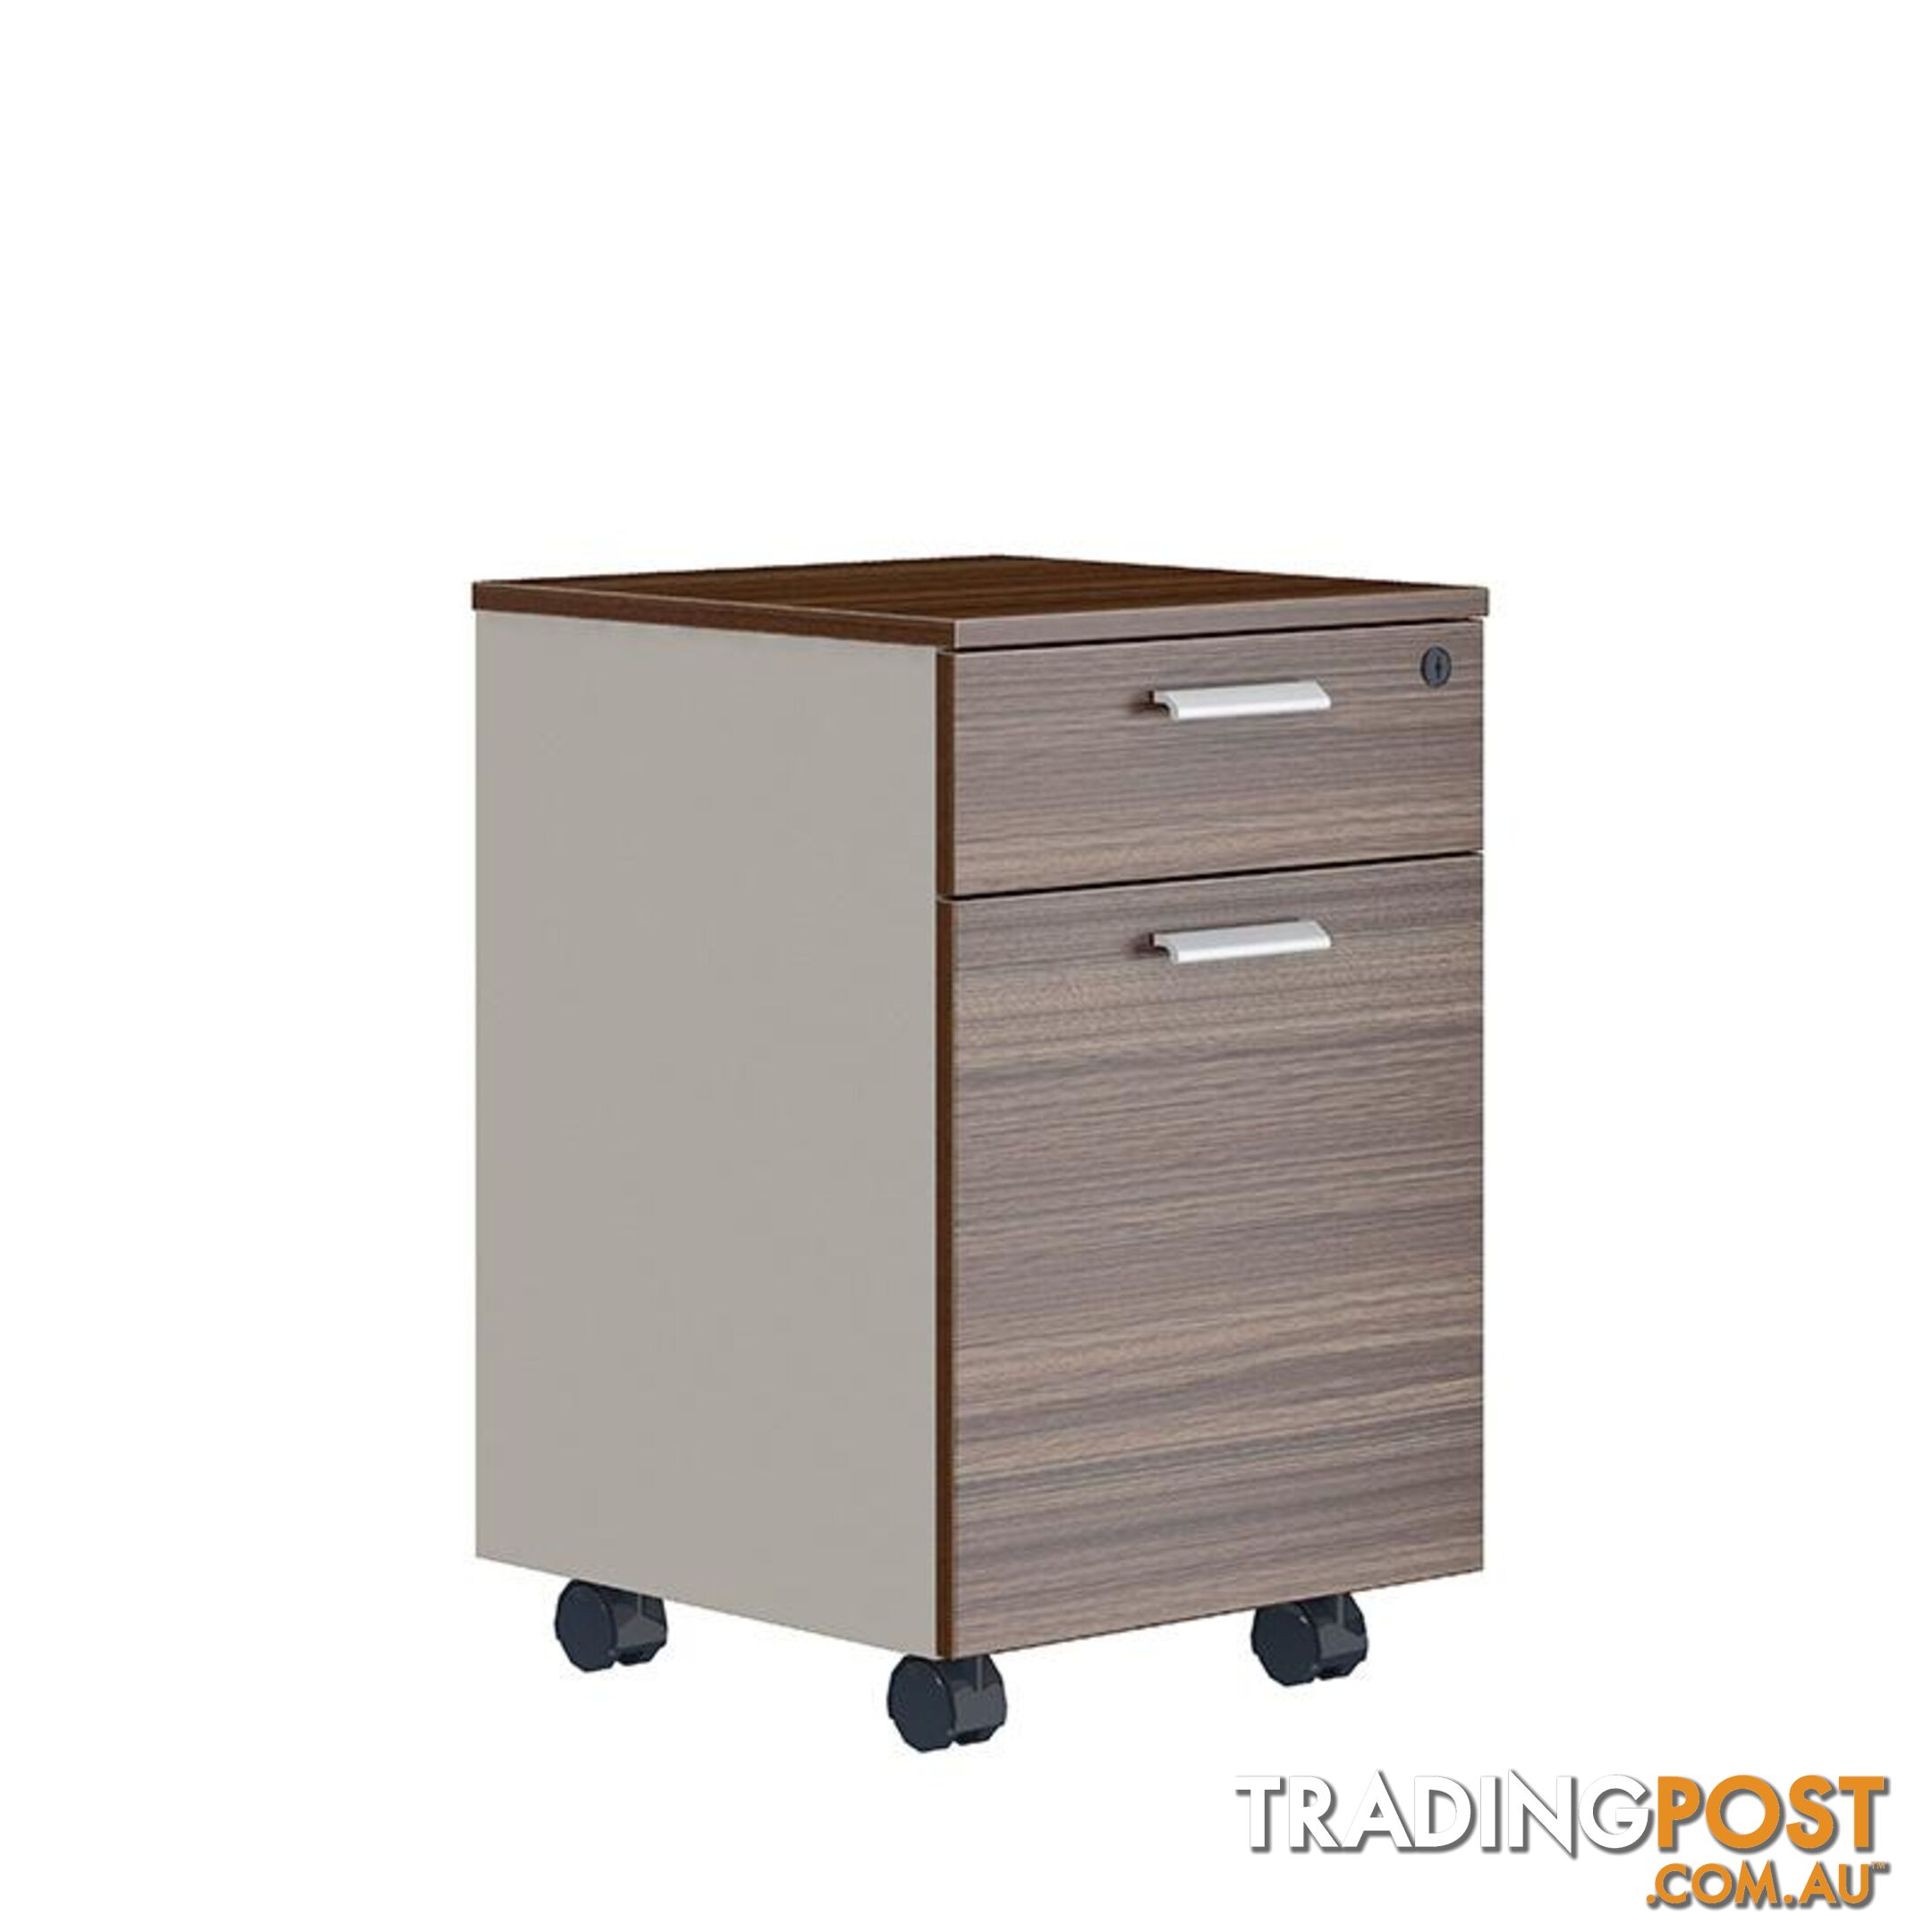 ANDERS Mobile Drawer Cabinet 40cm - Australian Gold Oak & Beige - DF-TIAN-H0101 - 9334719011202